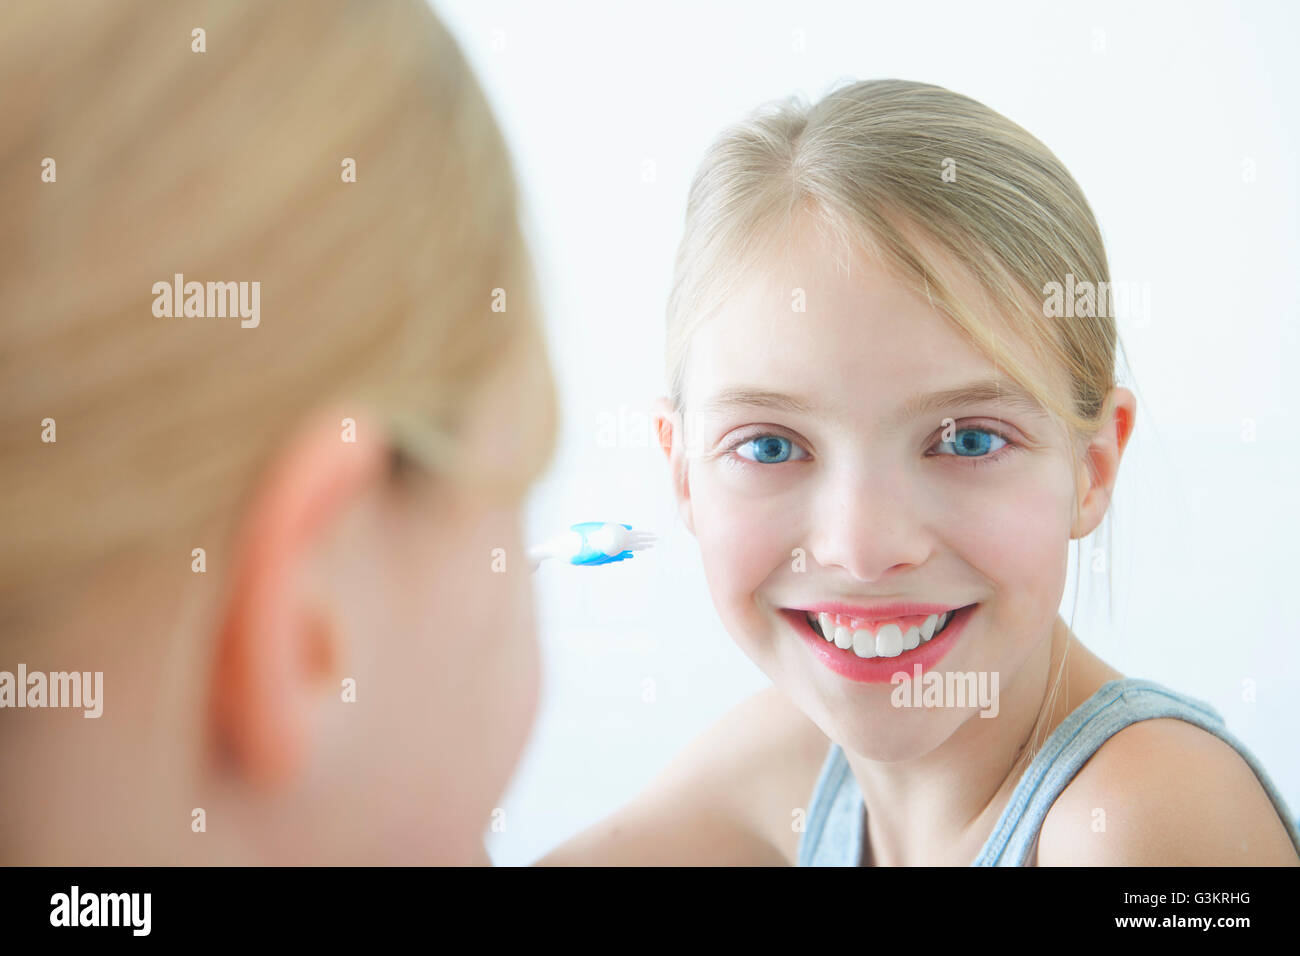 Miroir de salle de bains portrait of girl holding toothbrush Banque D'Images